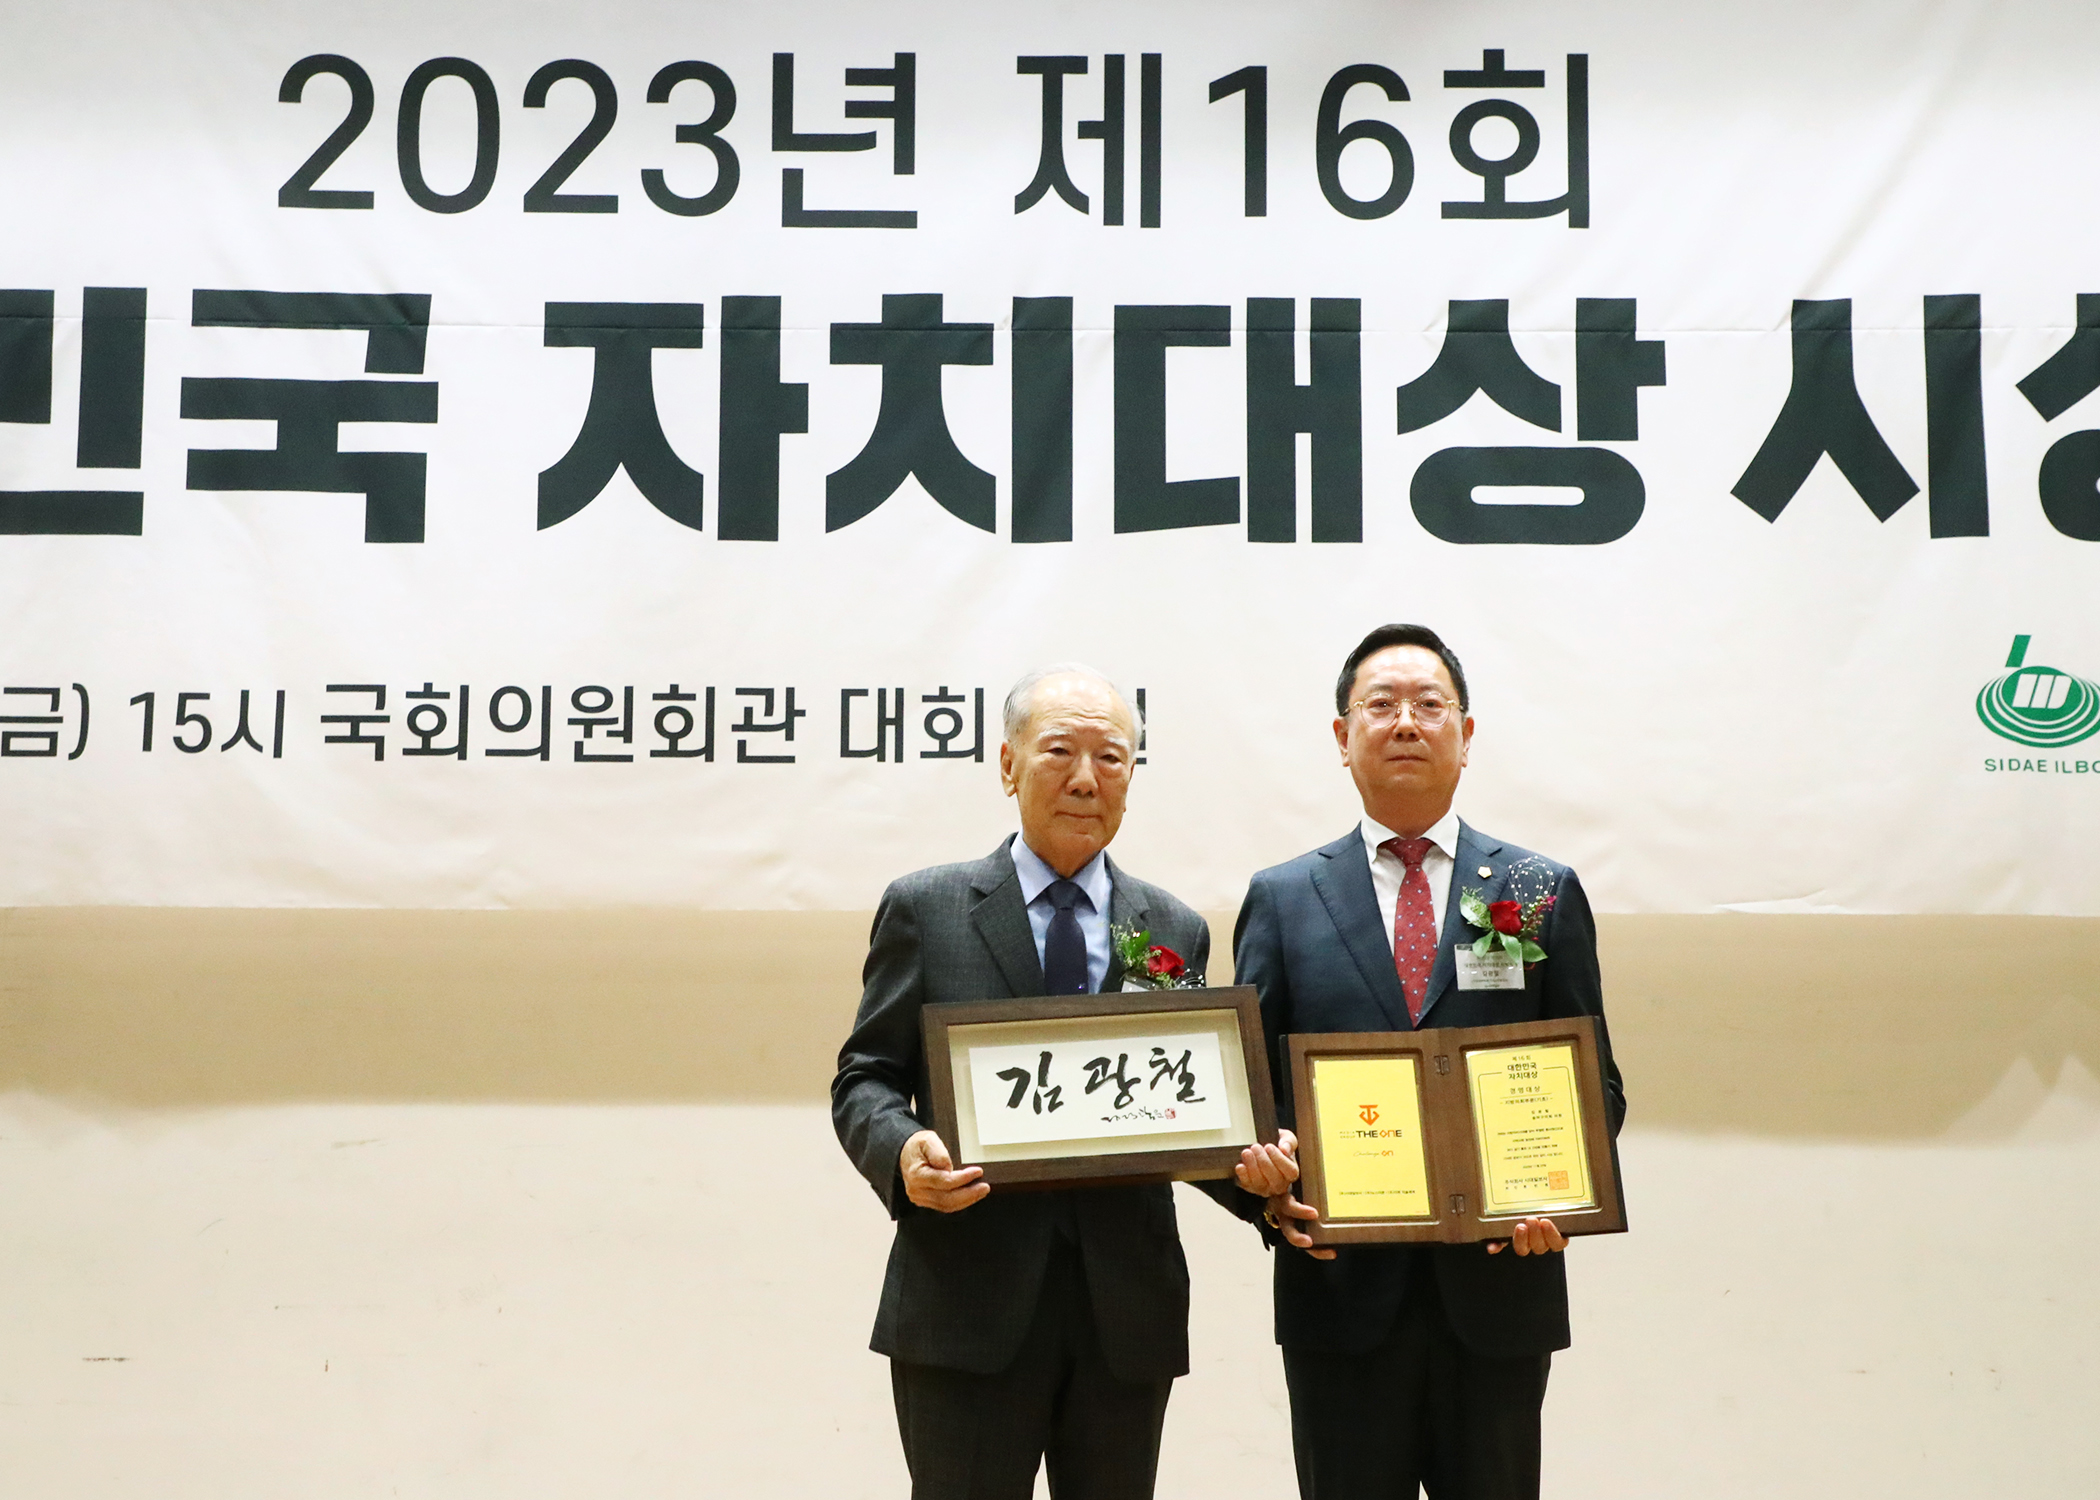 2023년 제16회 대한민국 자치대상 경영대상 수상 - 5